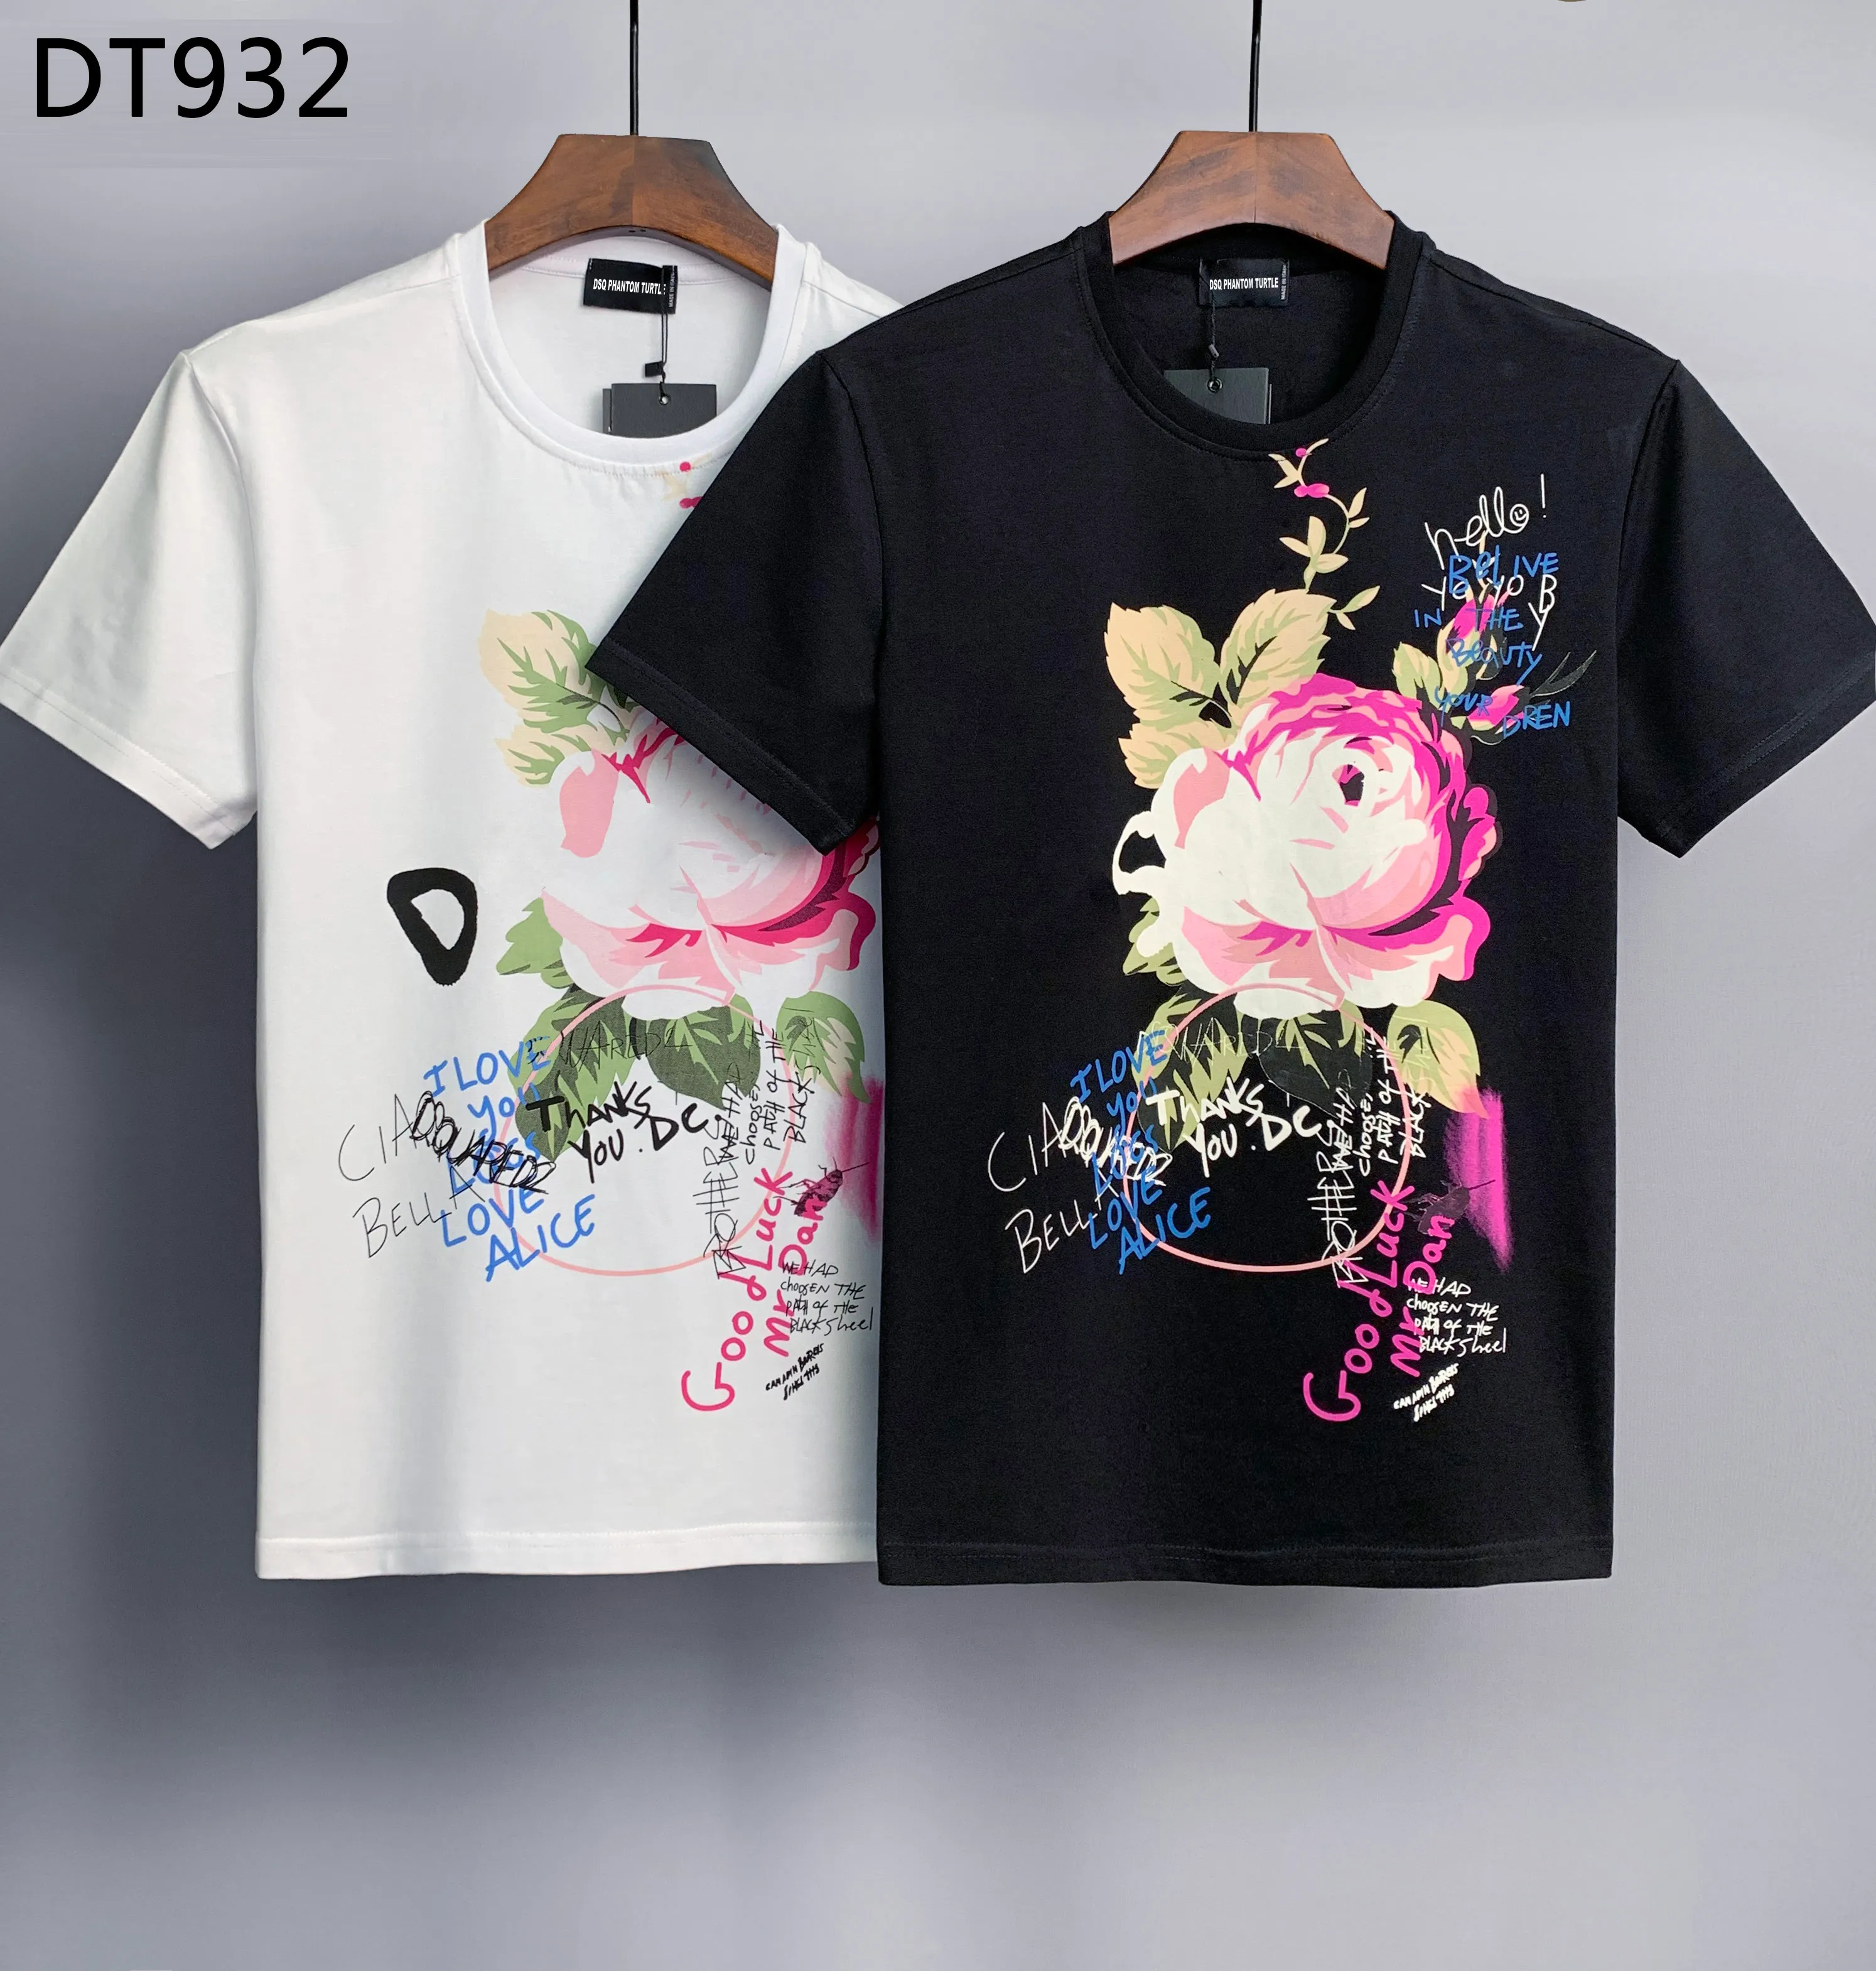 DSQ ファントム タートル メンズ Tシャツ メンズ デザイナー Tシャツ ブラック ホワイト バック クール Tシャツ メンズ 夏 イタリア ファッション カジュアル ストリート Tシャツ トップス プラスサイズ M-XXXL 158314